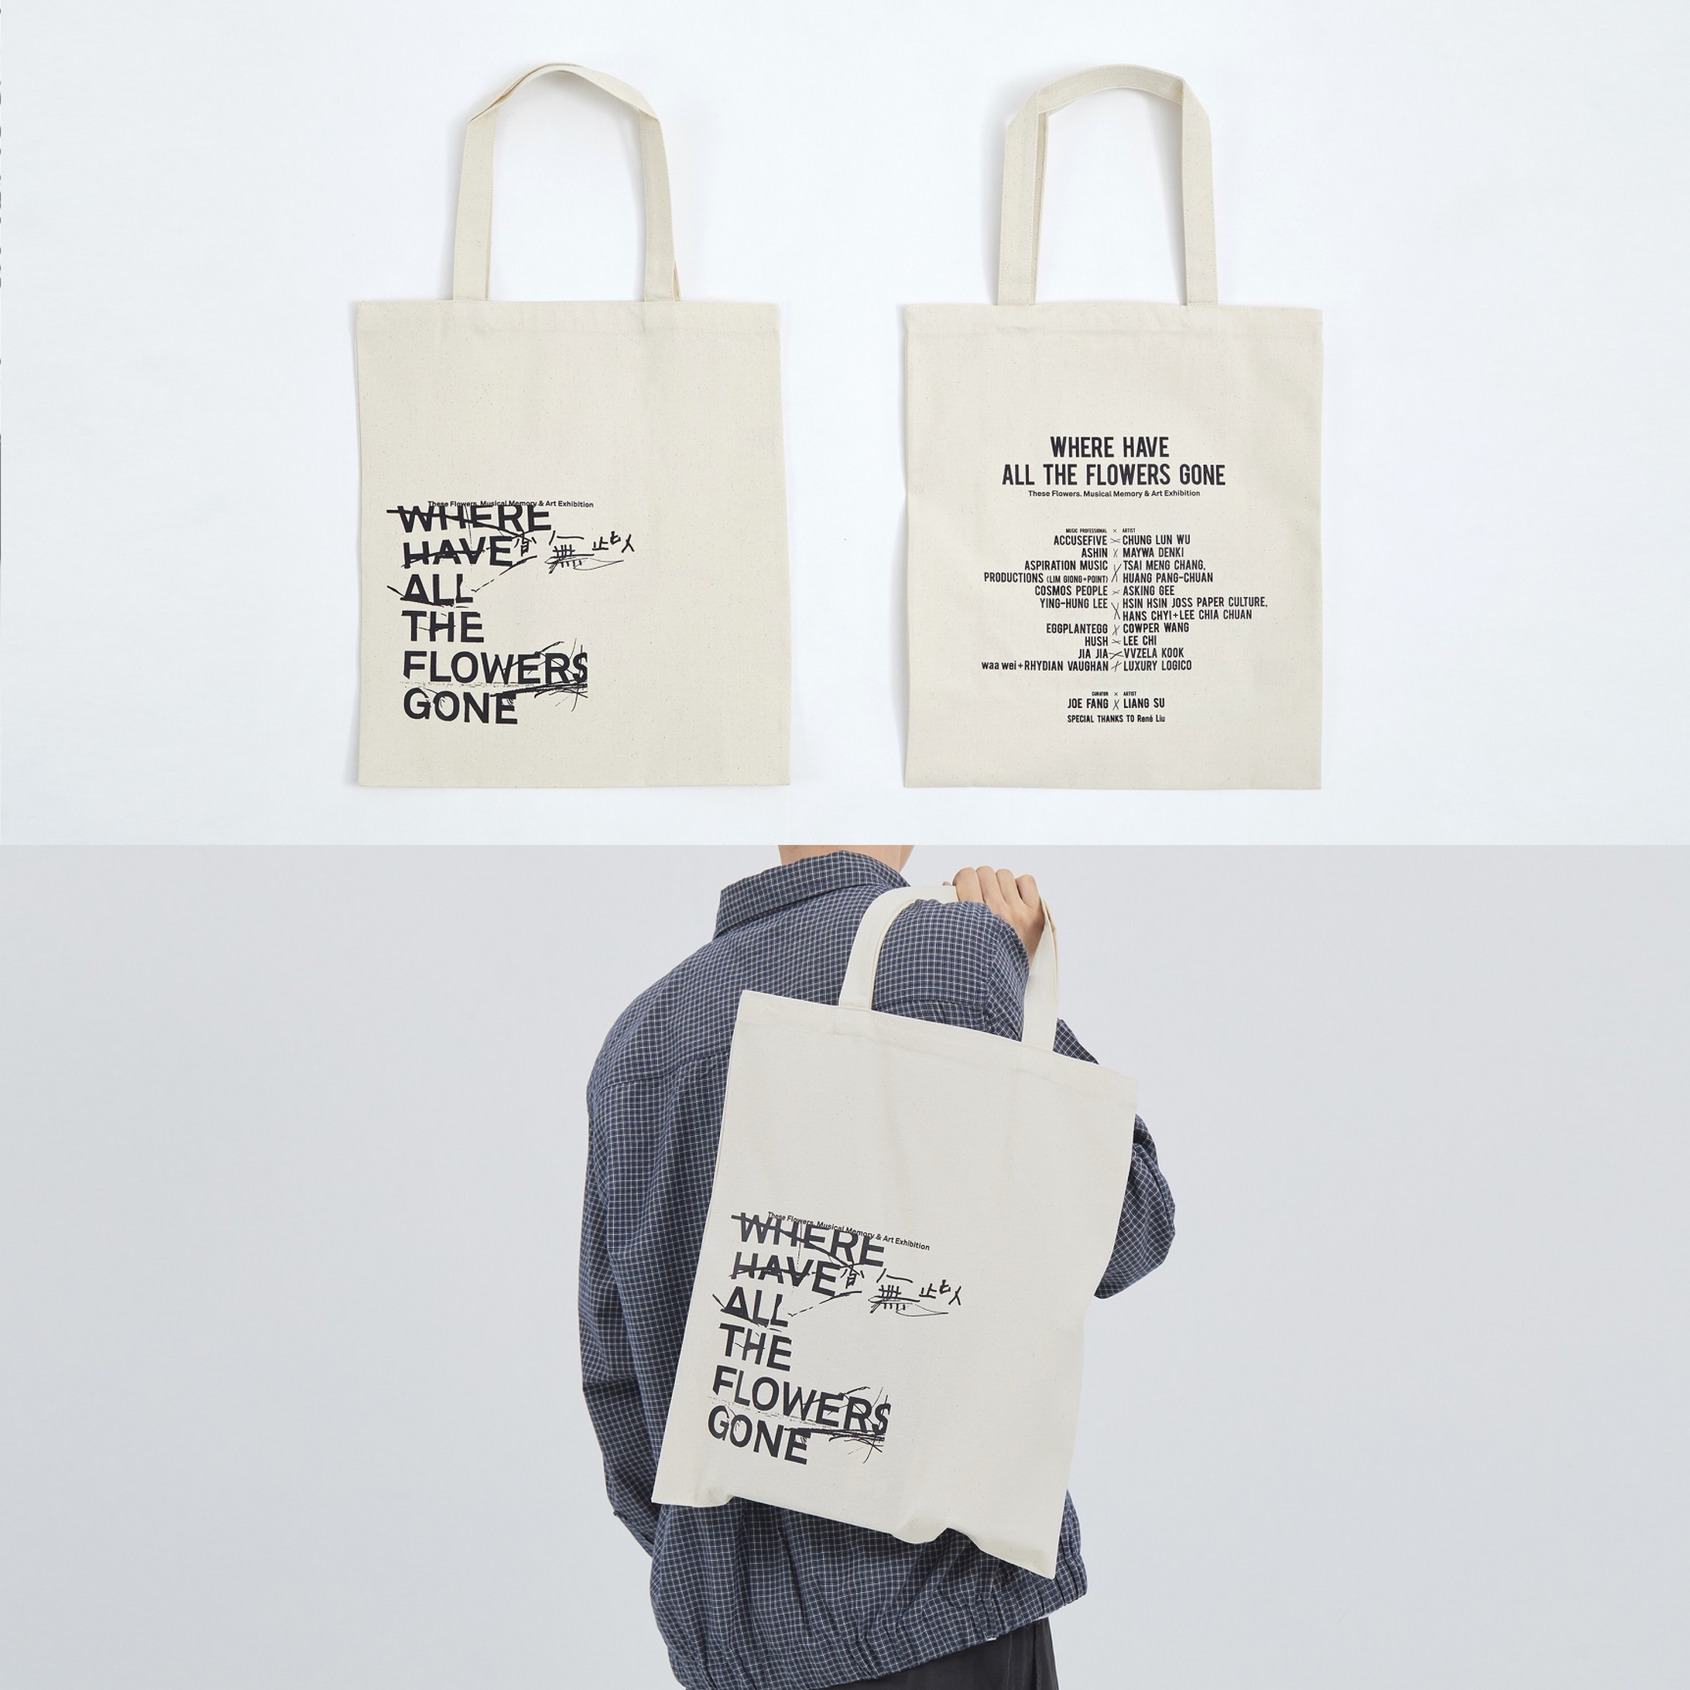 查無此包 Tote Bag，《查無此人—小花計畫展2019》 